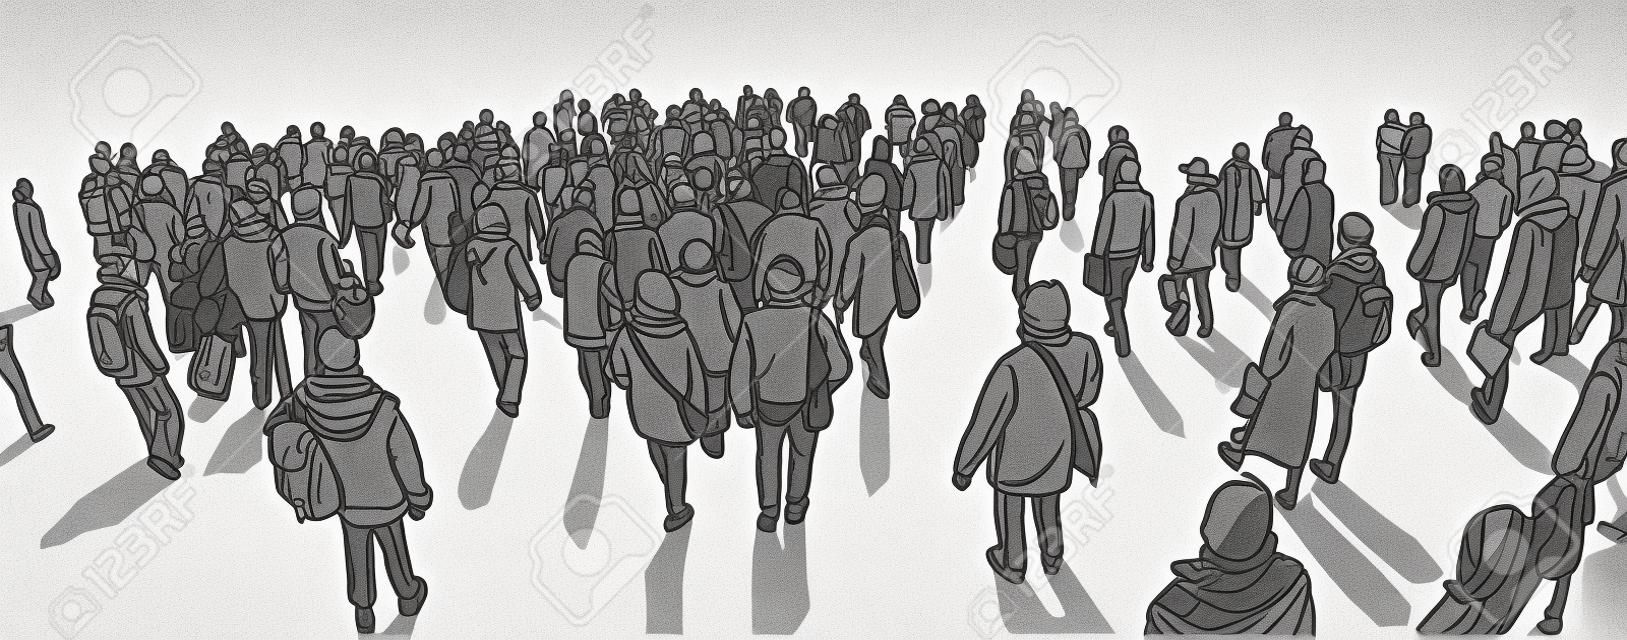 黒と白の灰色のスケールで遠近法を歩く大都会の群衆のイラスト